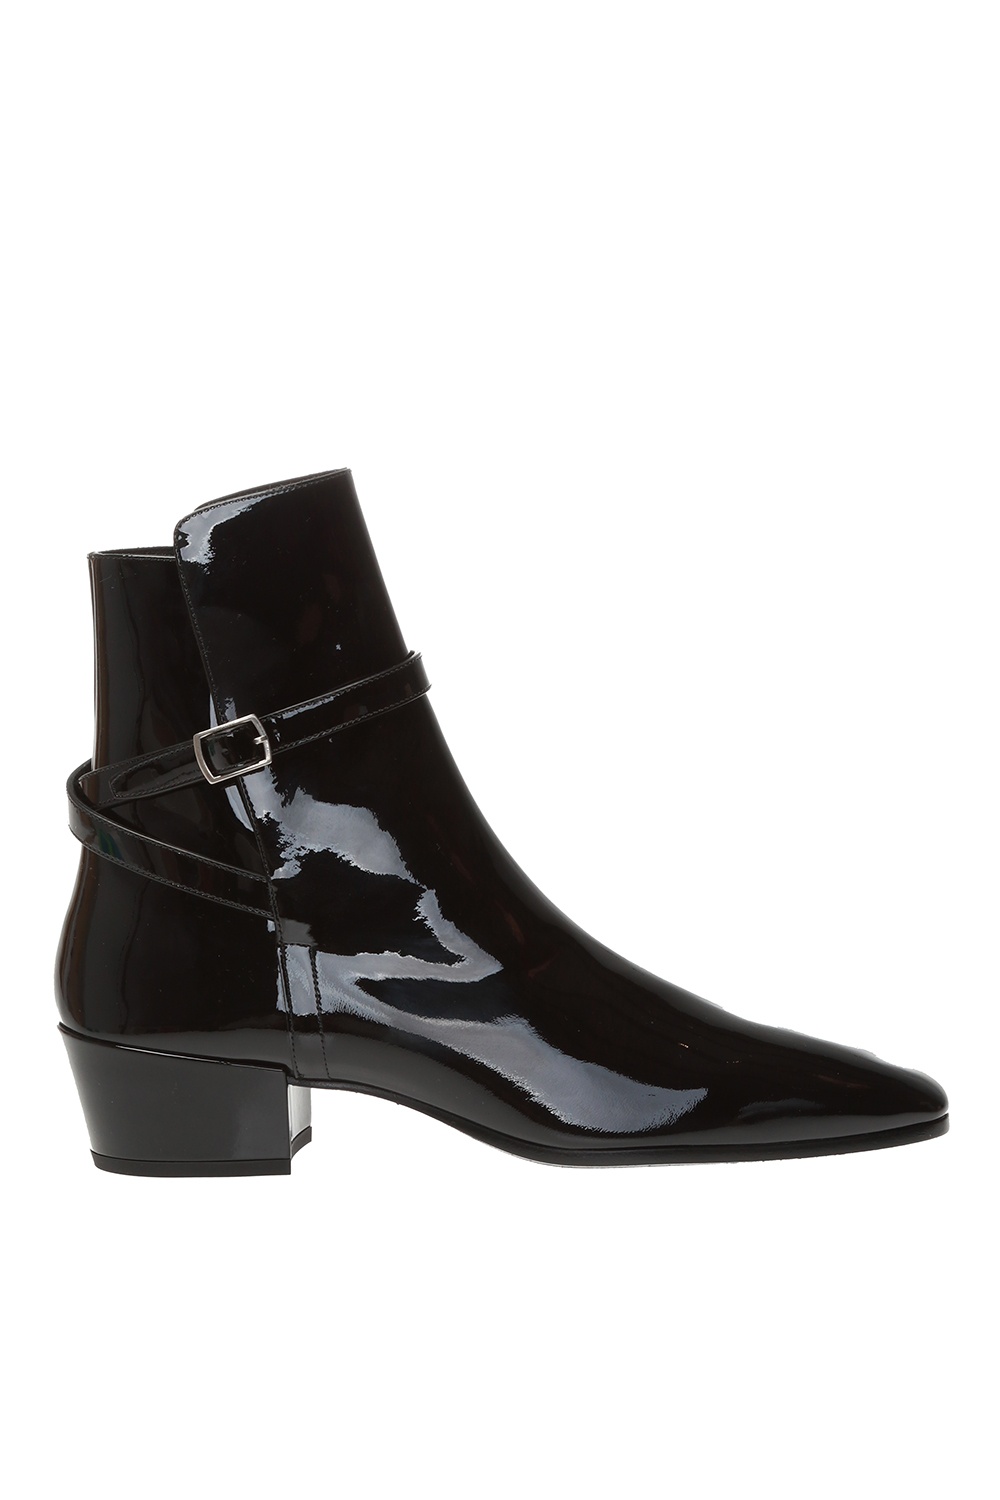 Saint Laurent 'Clementi' ankle boots with decorative straps | Women's ...